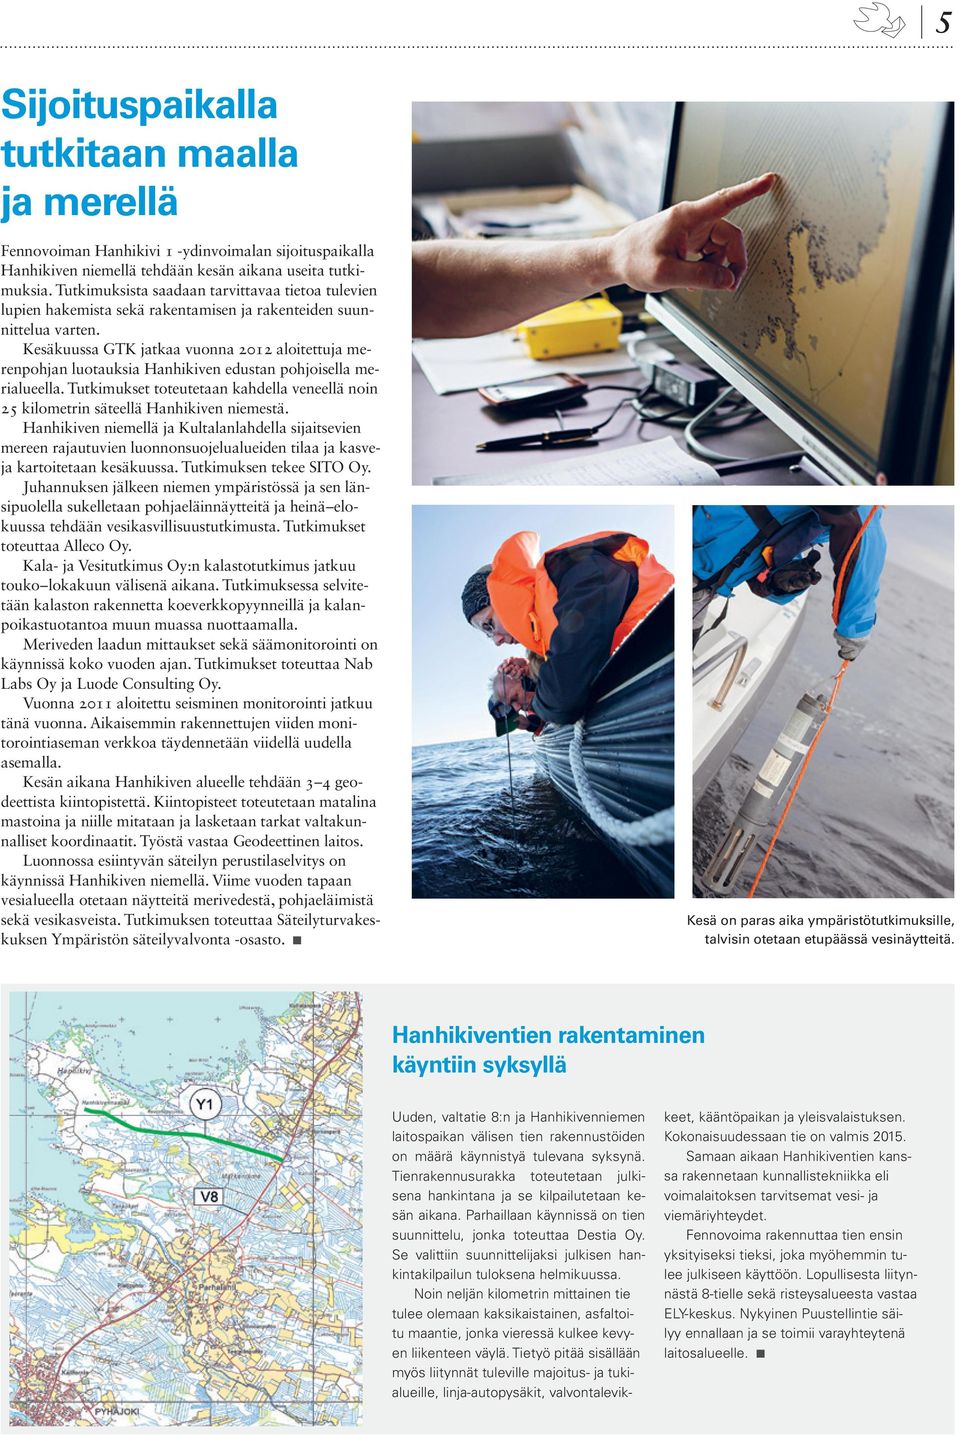 Kesäkuussa GTK jatkaa vuonna 2012 aloitettuja merenpohjan luotauksia Hanhikiven edustan pohjoisella merialueella.